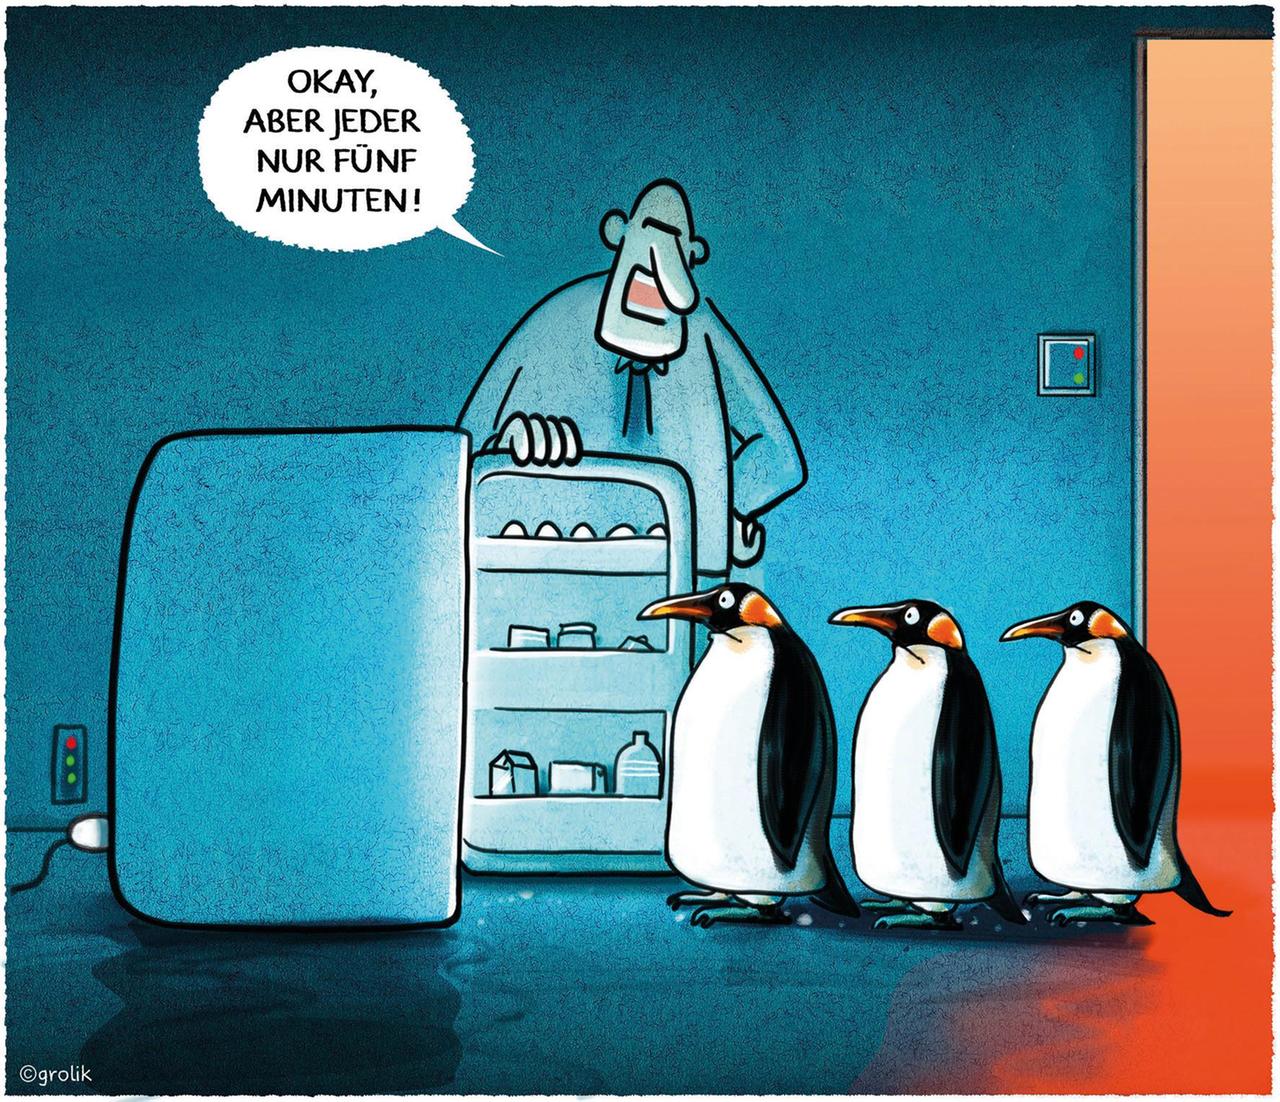 Ein Mann hält einigen Pinguinen eine Kühlschranktür auf. Er sagt: "Okay, aber jeder nur fünf Minuten!"